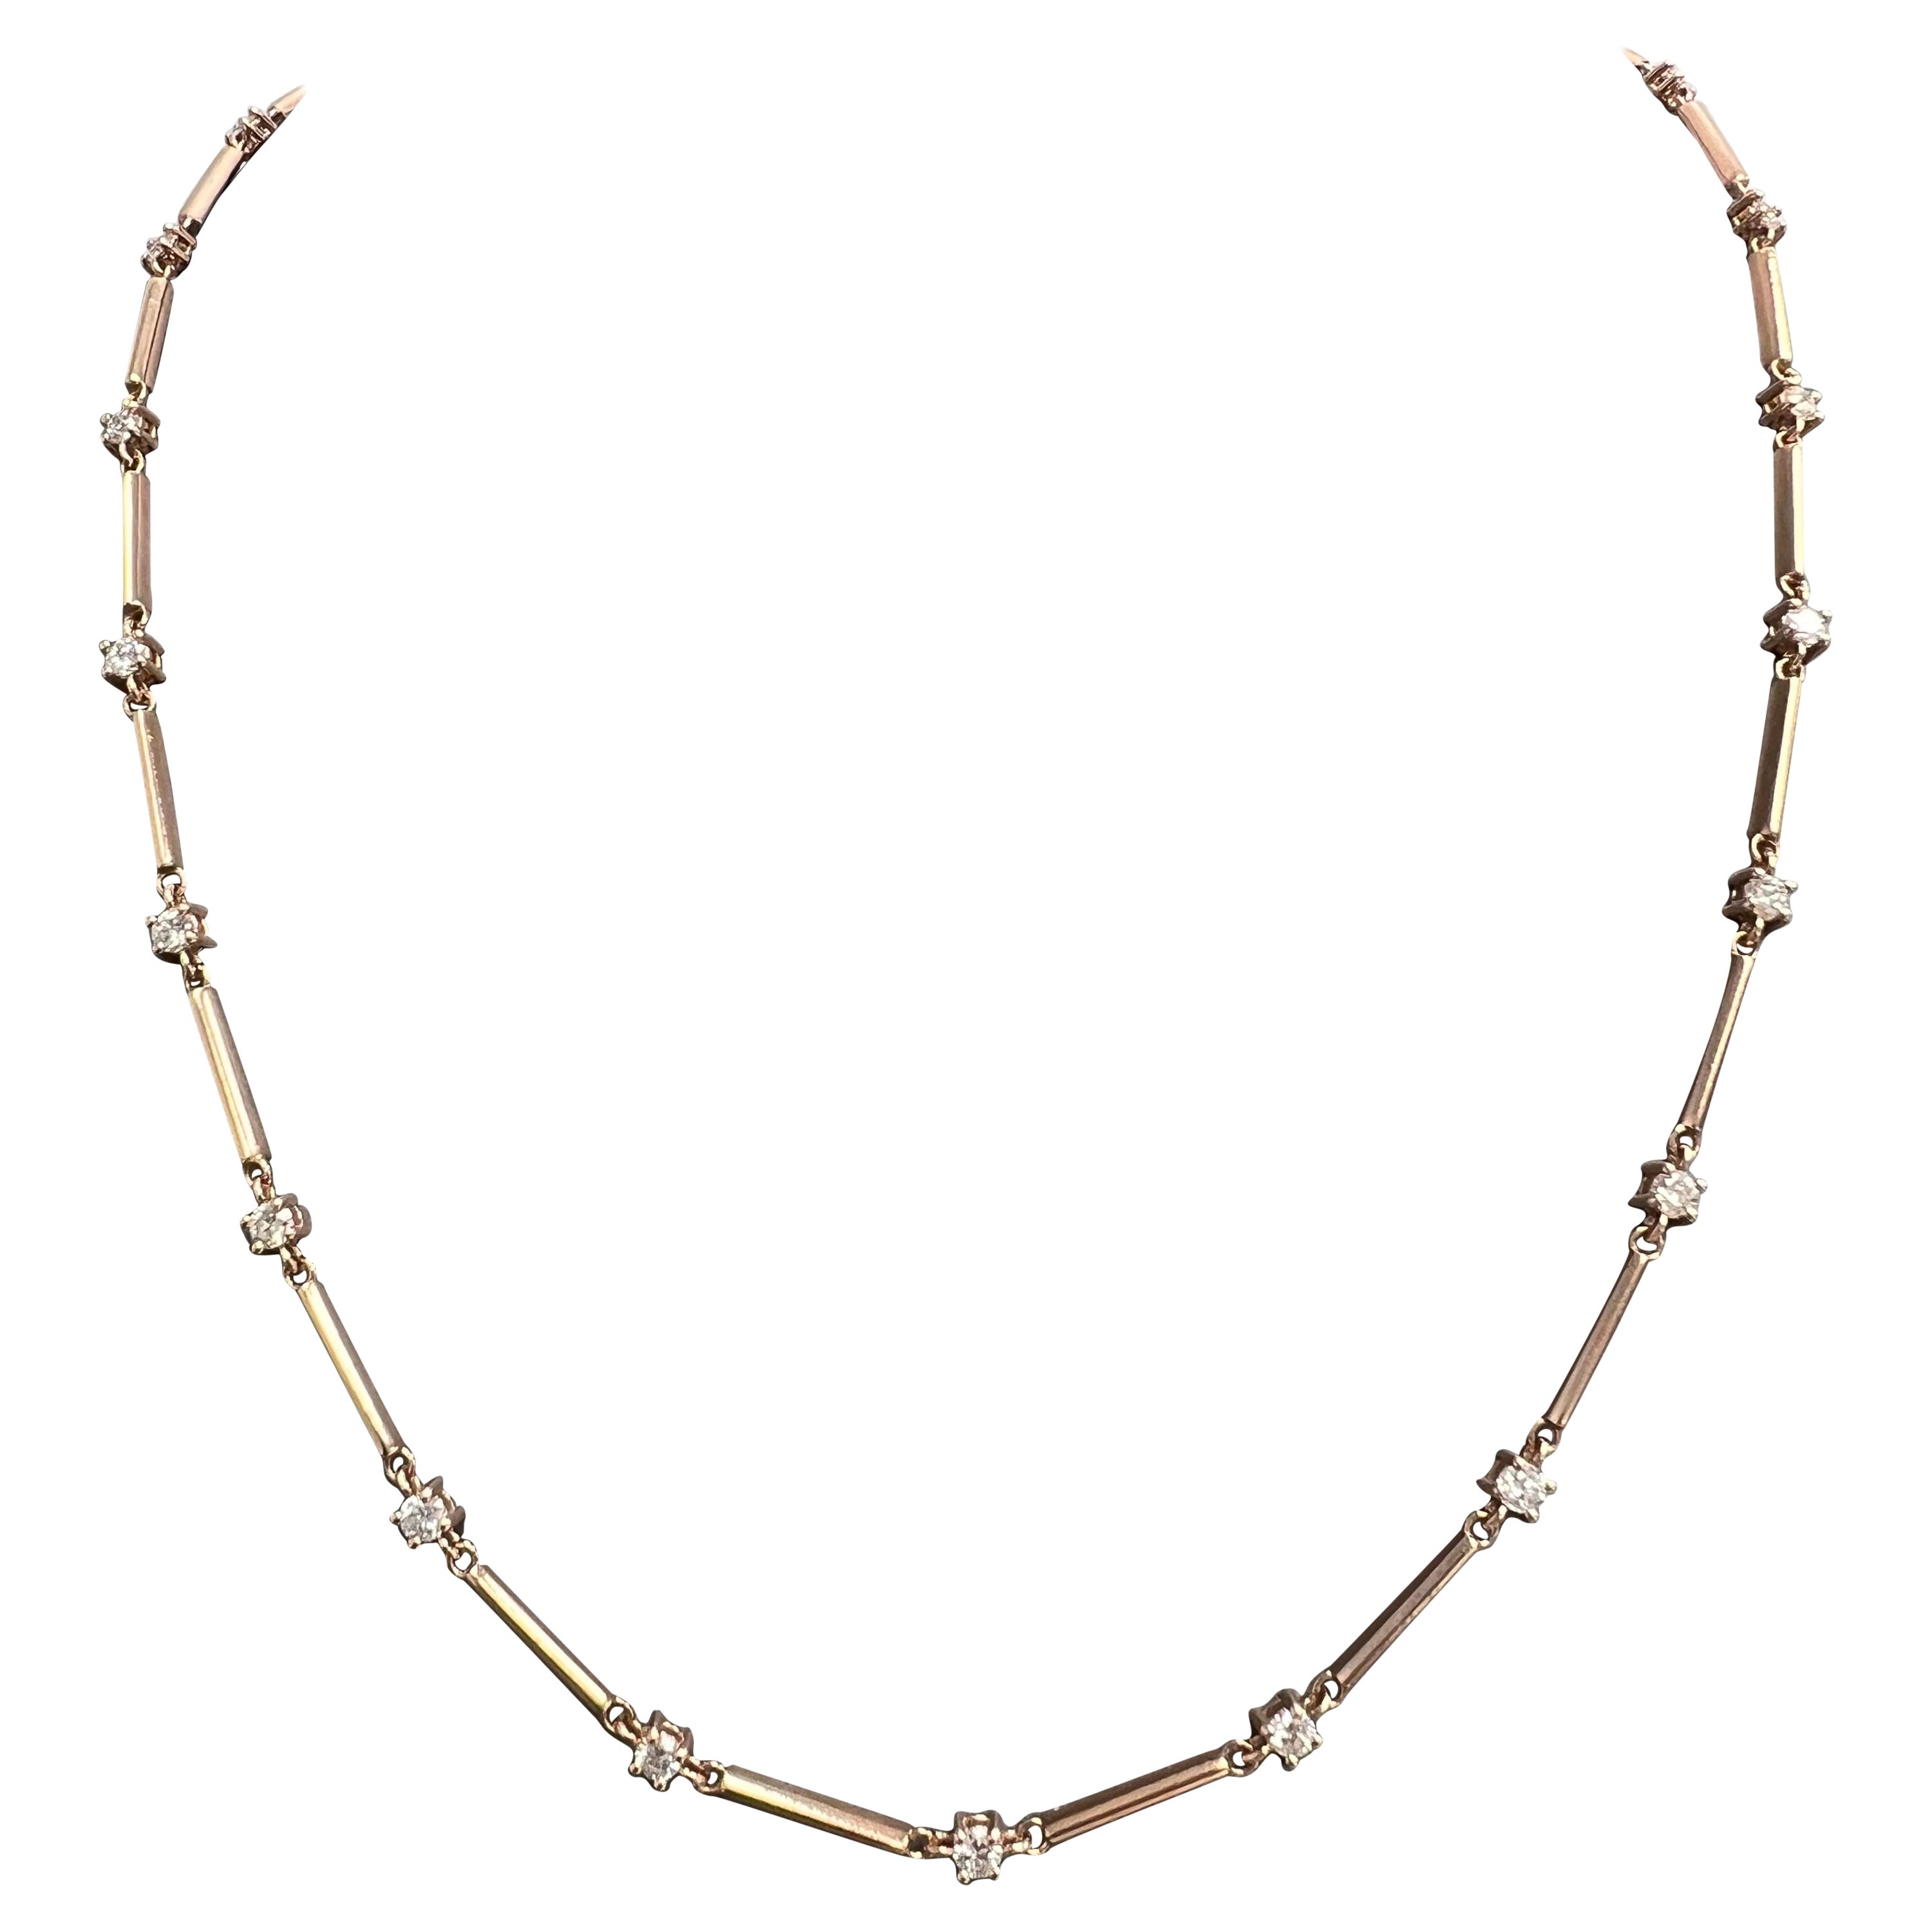 14K Rose Gold Diamanten Halskette mit 2,01 natürlichen Diamanten in einer Gold-Bar-Kette.
Großartiges Design für eine Diamant-Halskette, die sich zwischen einer Tennis-Halskette und einer Kette mit Diamanten pro Meter bewegt.
Super trendig und